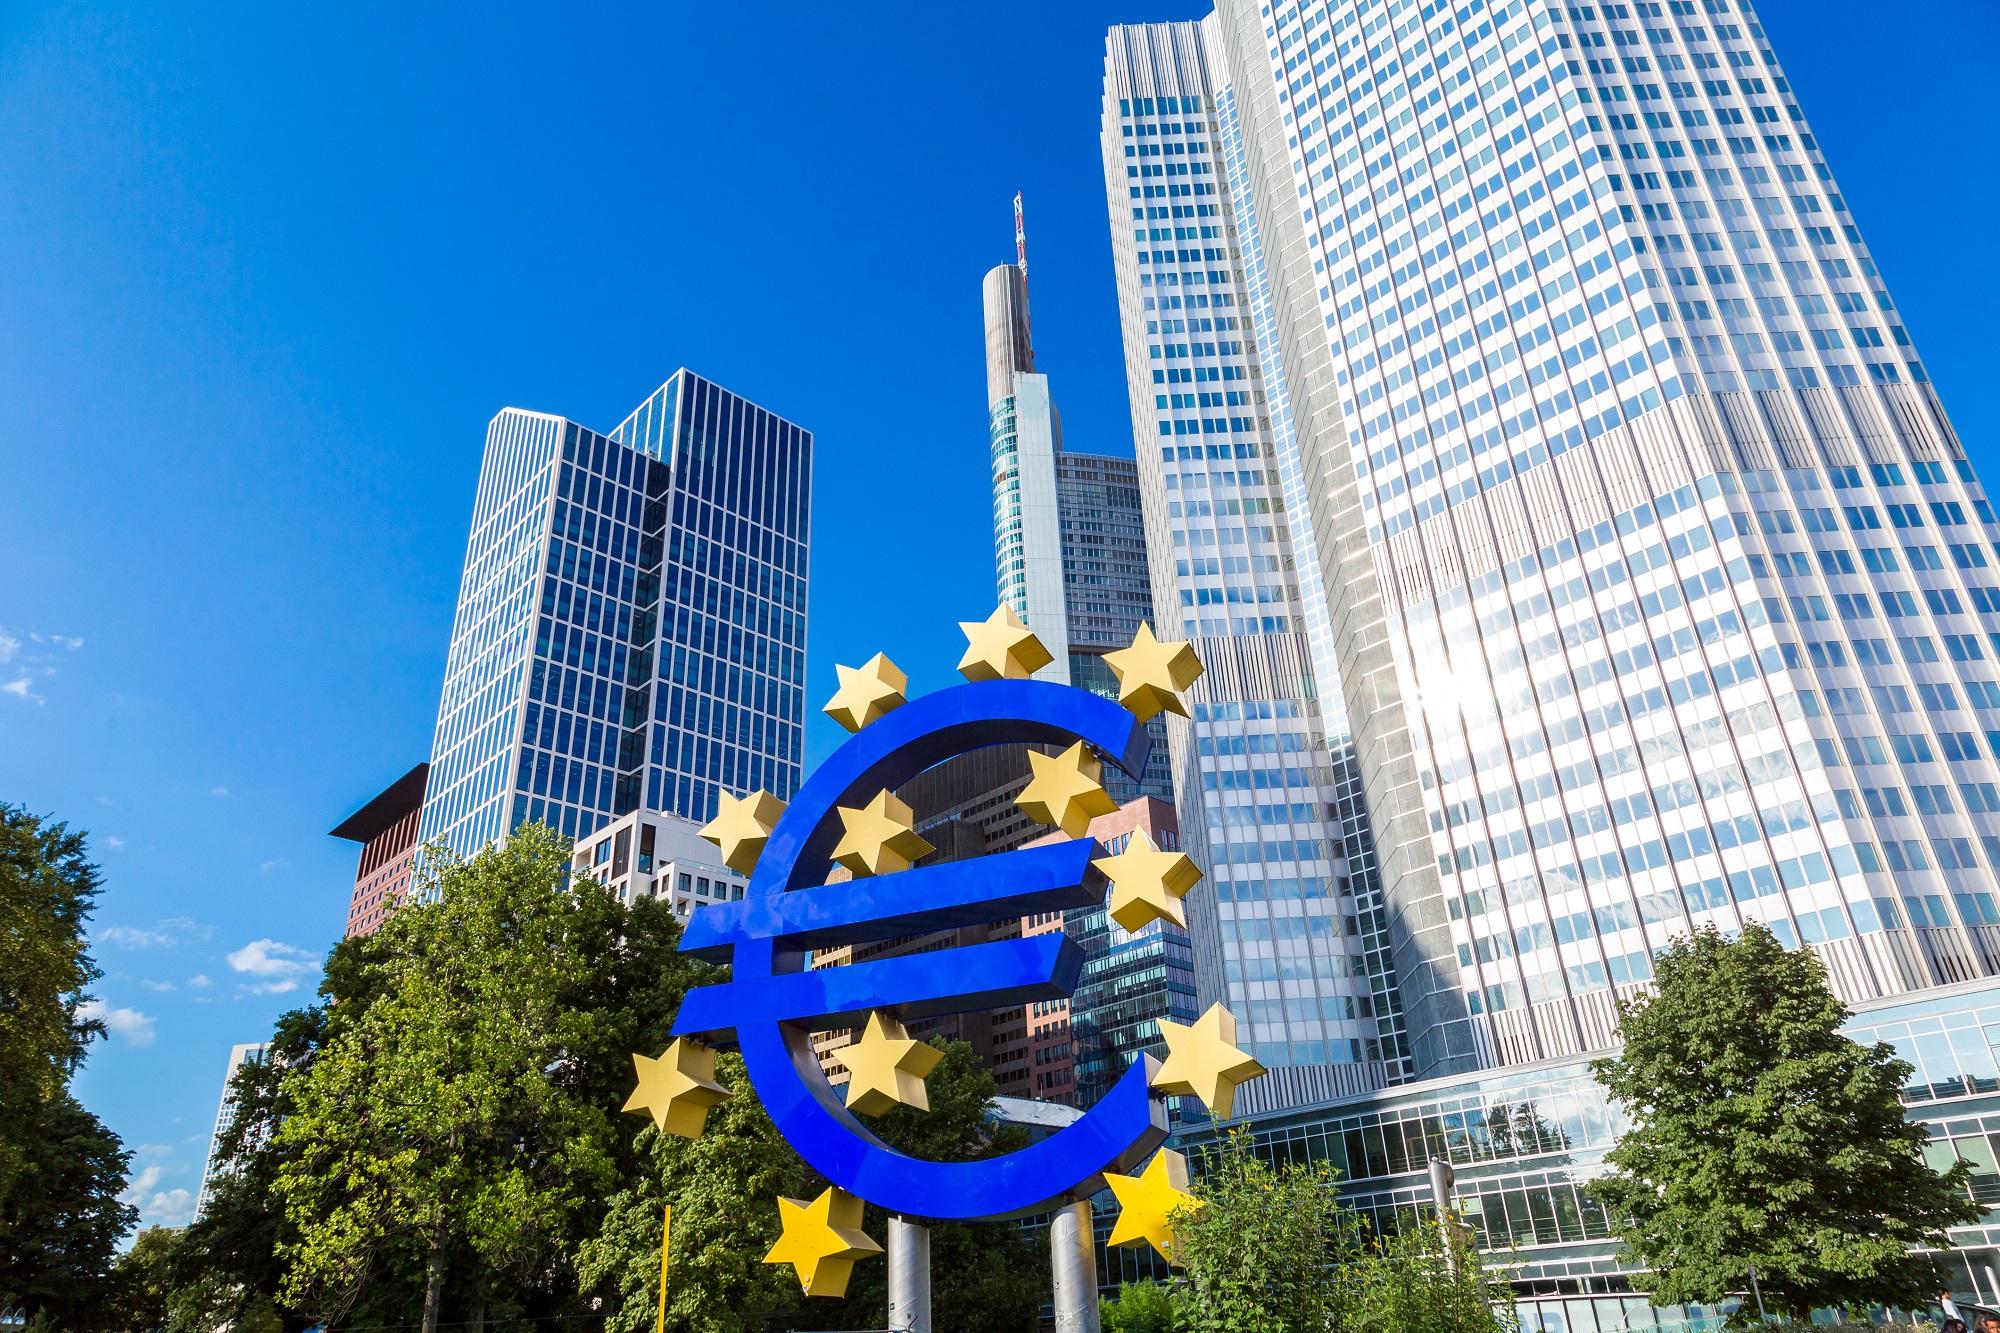 البنك المركزي الأوروبي أبقى معدلات الفائدة دون تغيير. (shutterstock)